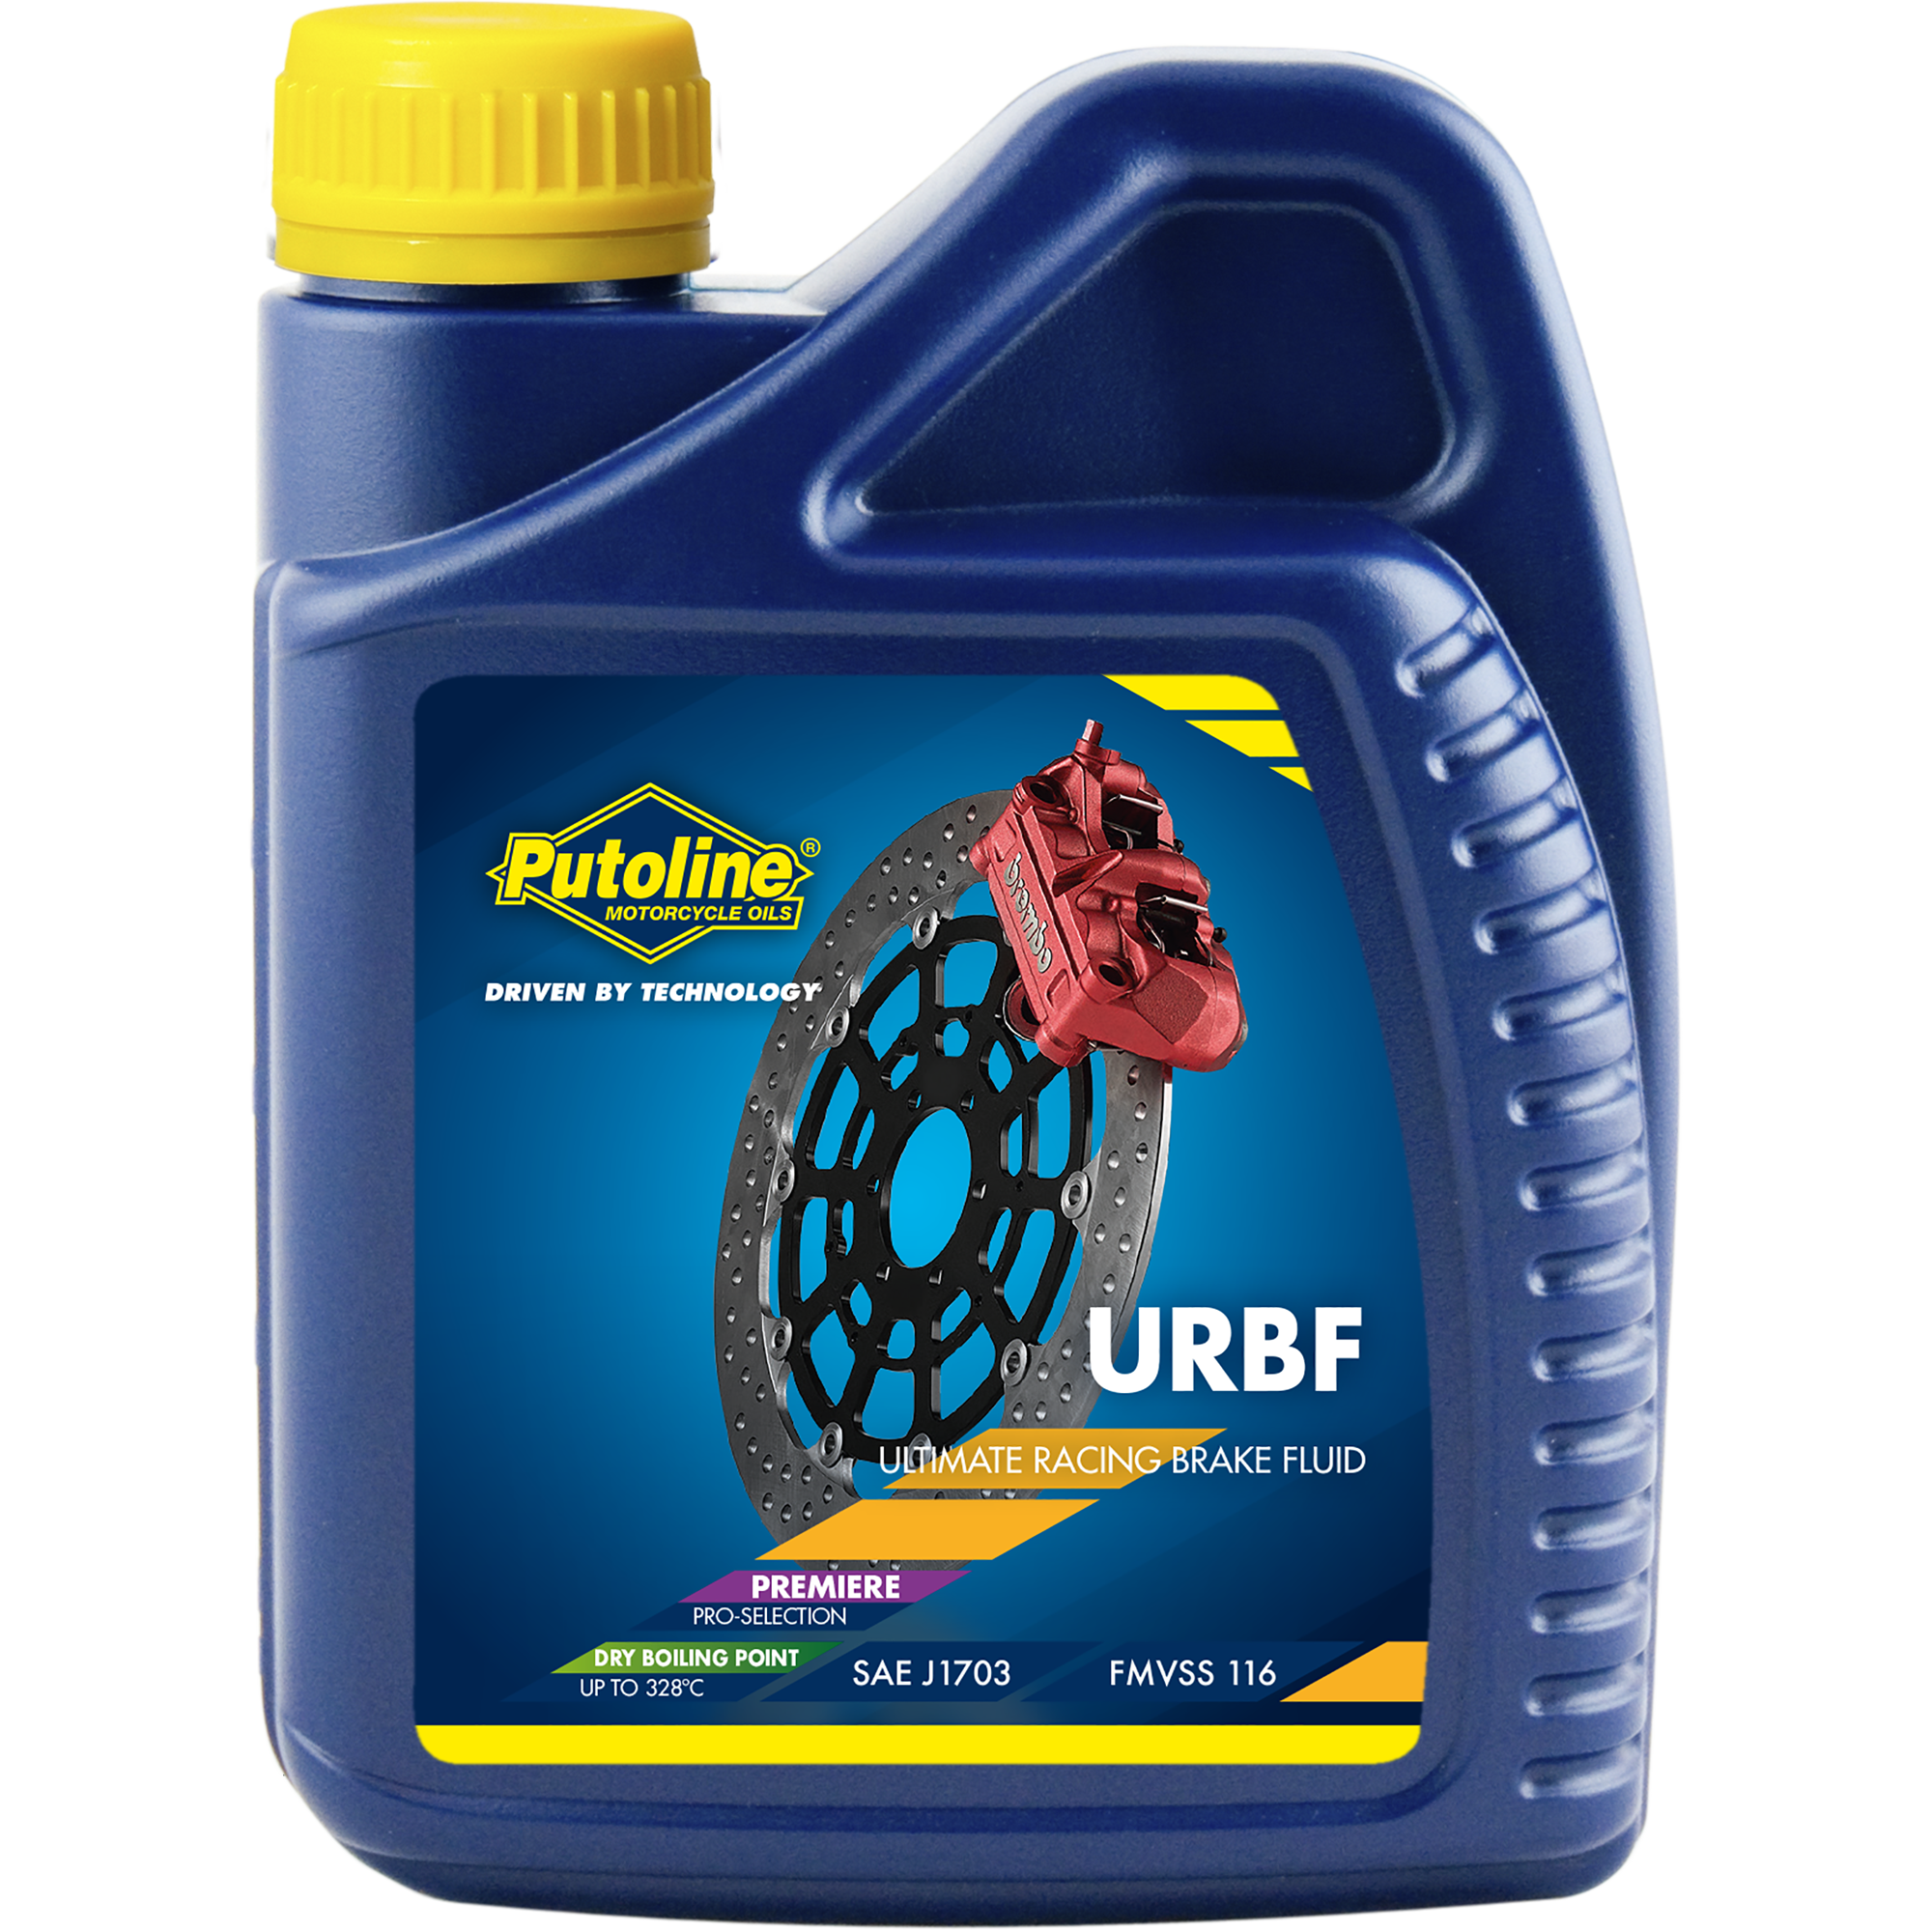 Putoline Ultimate Racing Brake Fluid, 500 ml